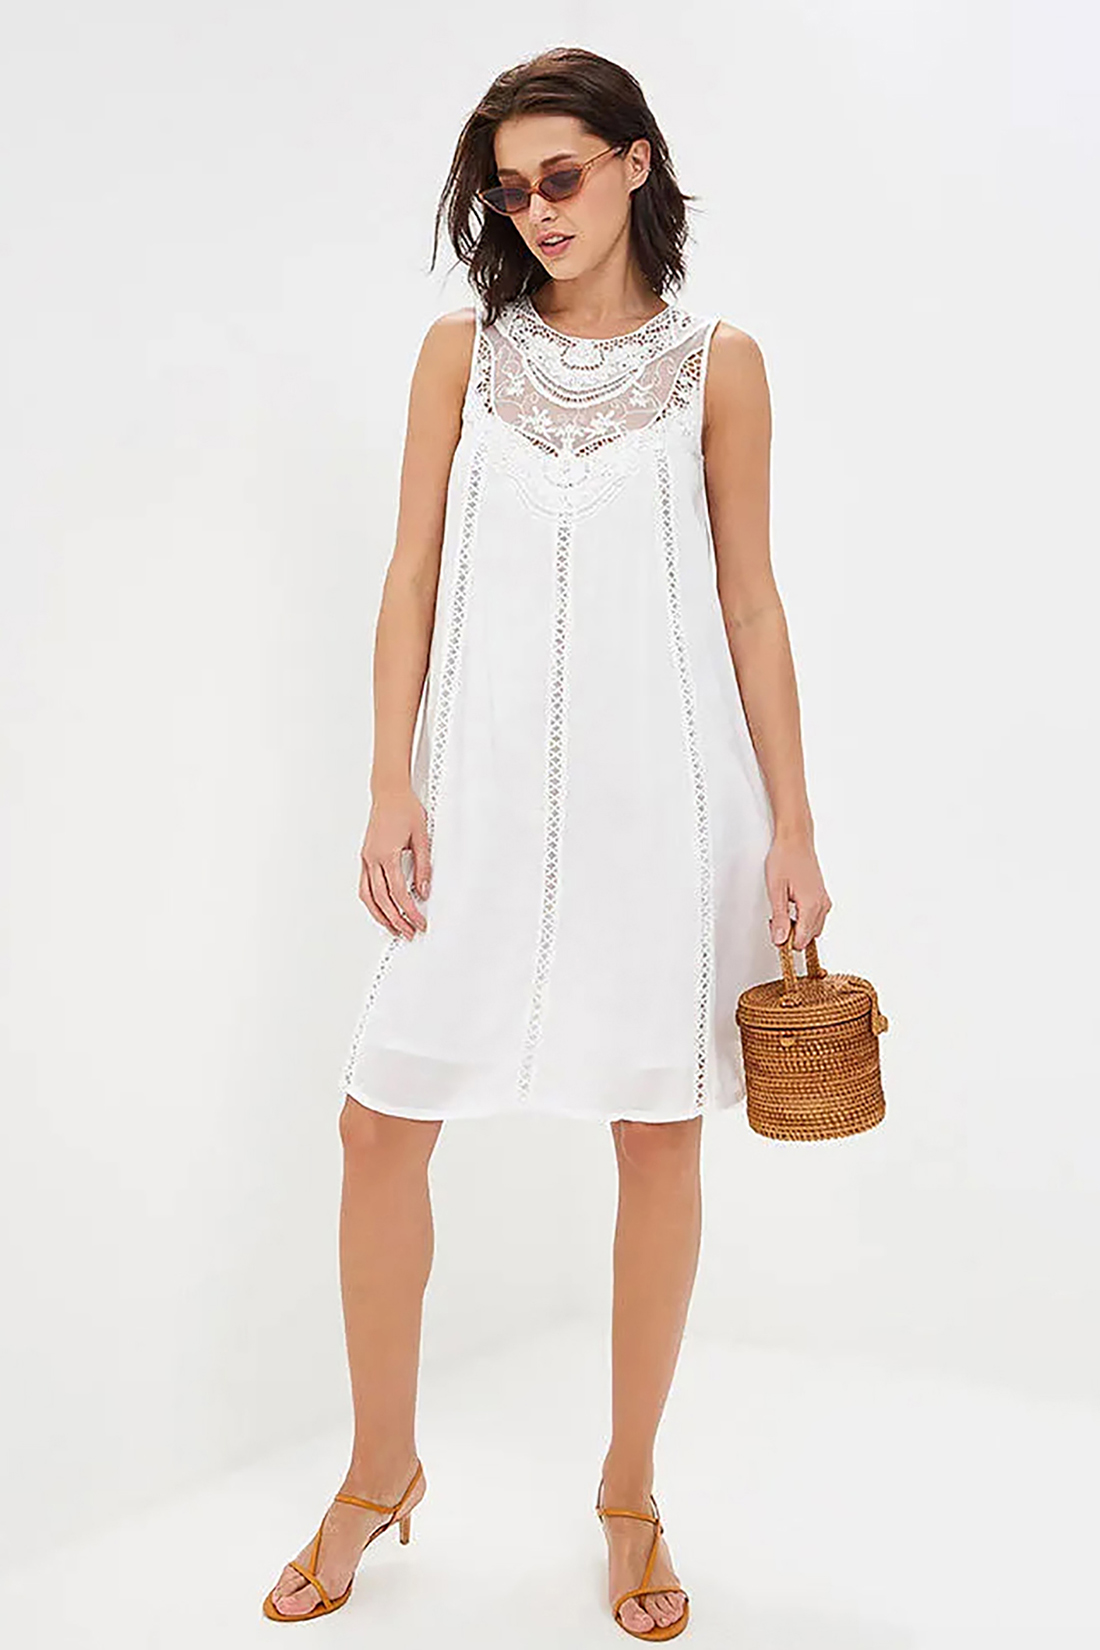 Платье с кружевной кокеткой (арт. baon B459069), размер L, цвет белый Платье с кружевной кокеткой (арт. baon B459069) - фото 1